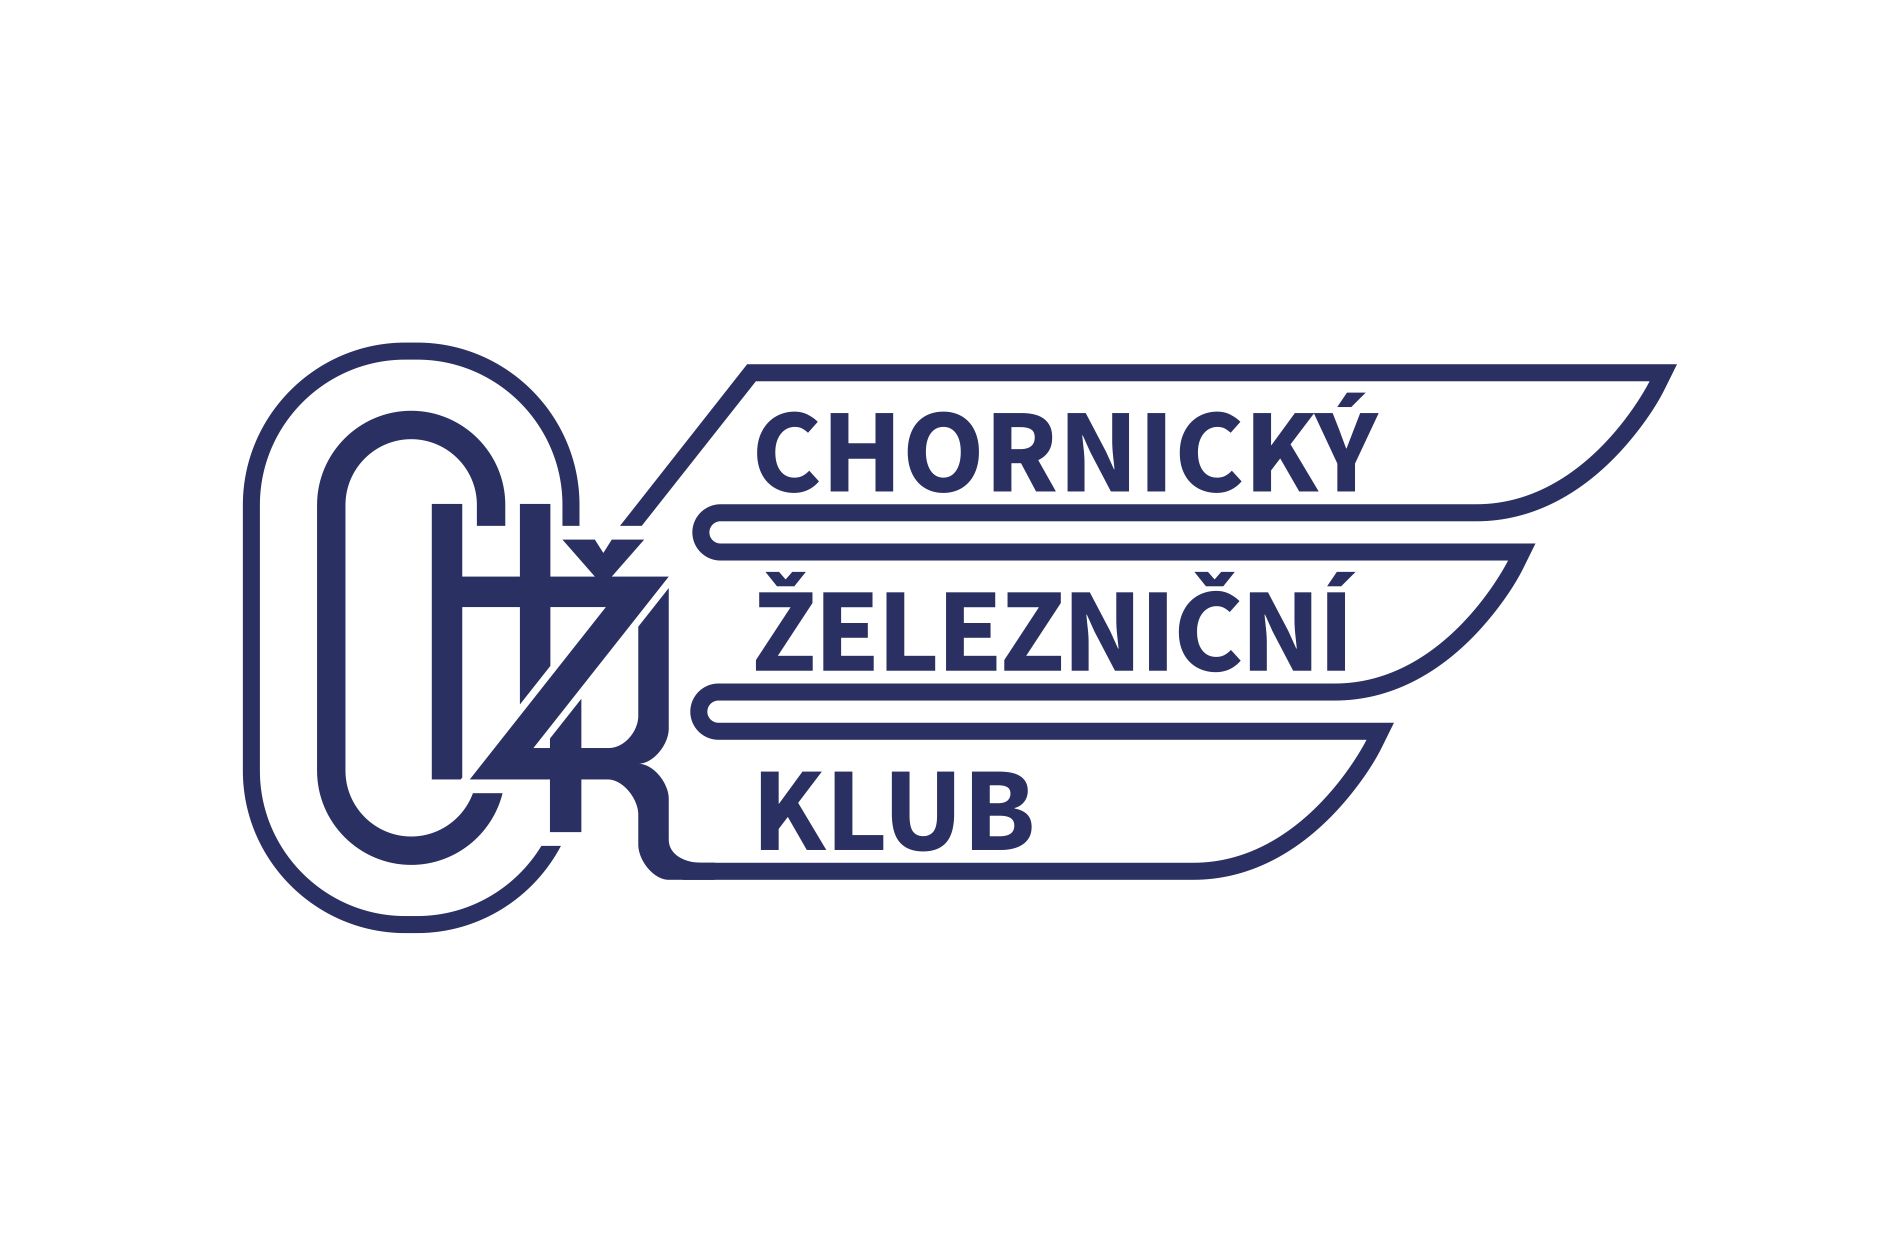 chornicky zeleznicni klub